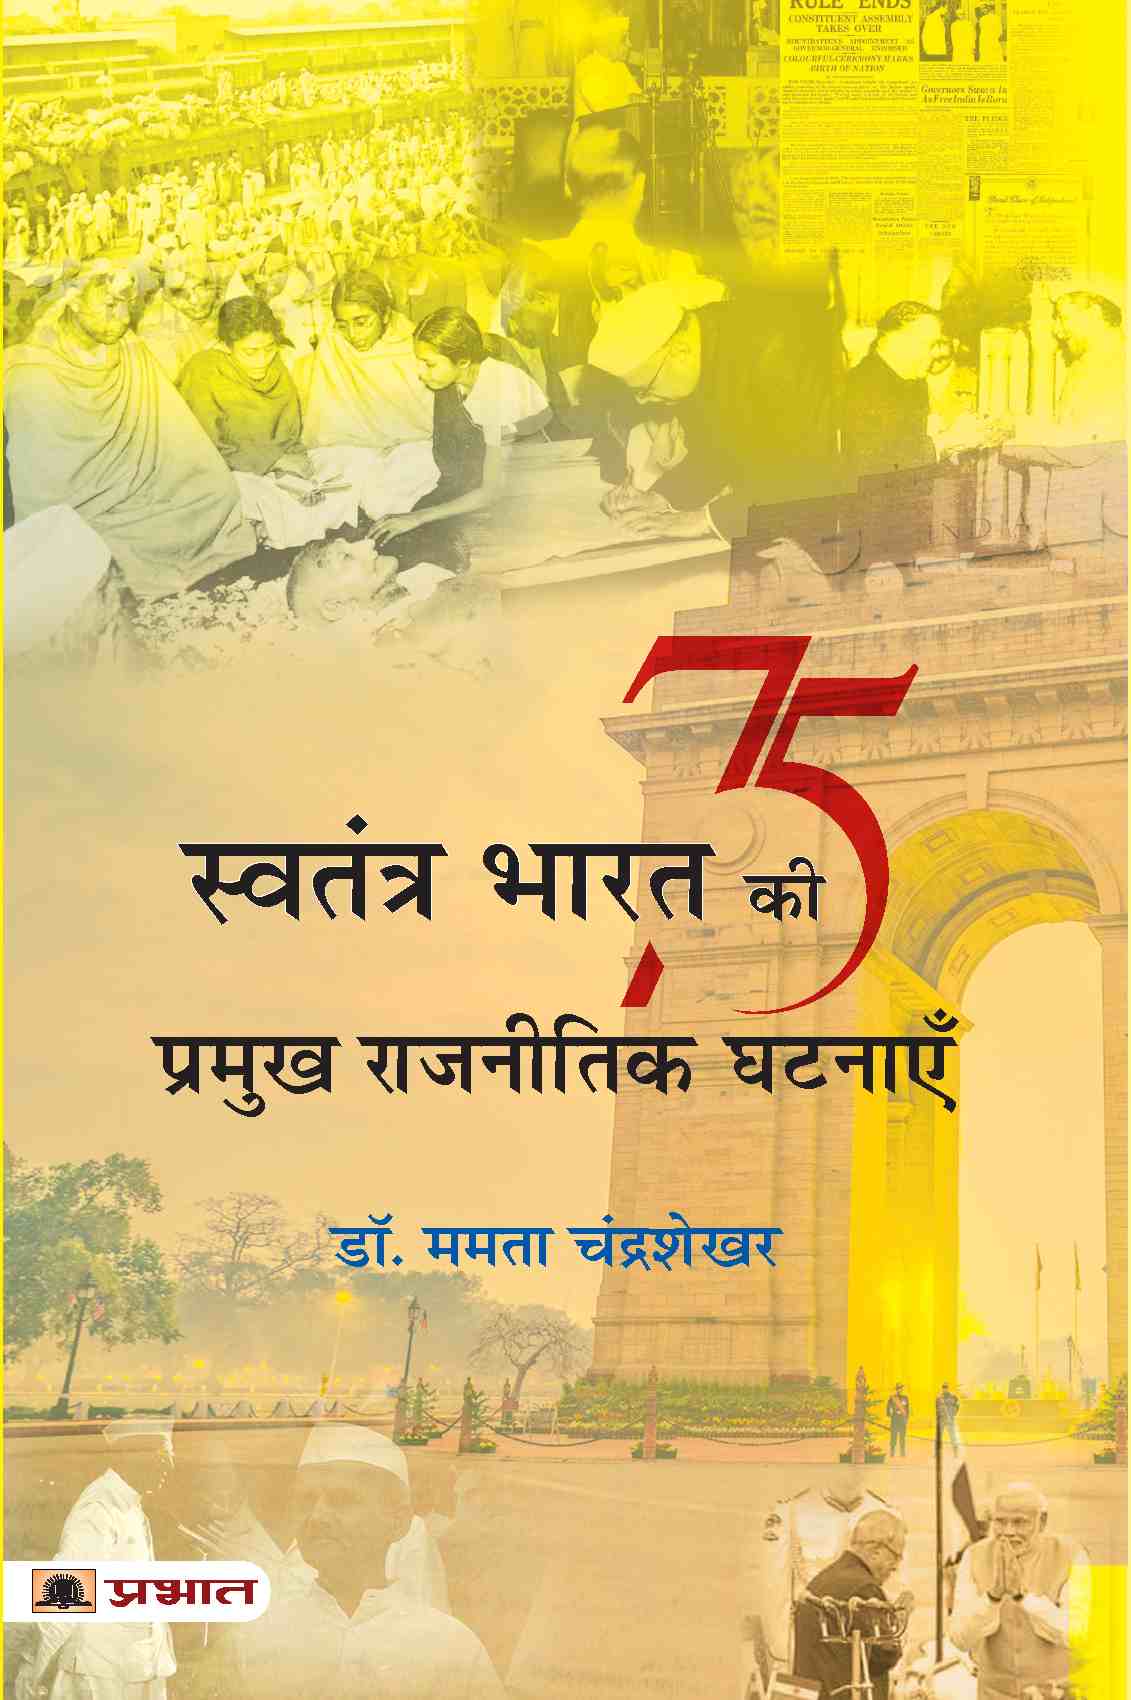 Swatantra Bharat Ki 75 Pramukh Rajneetik Ghatnayen